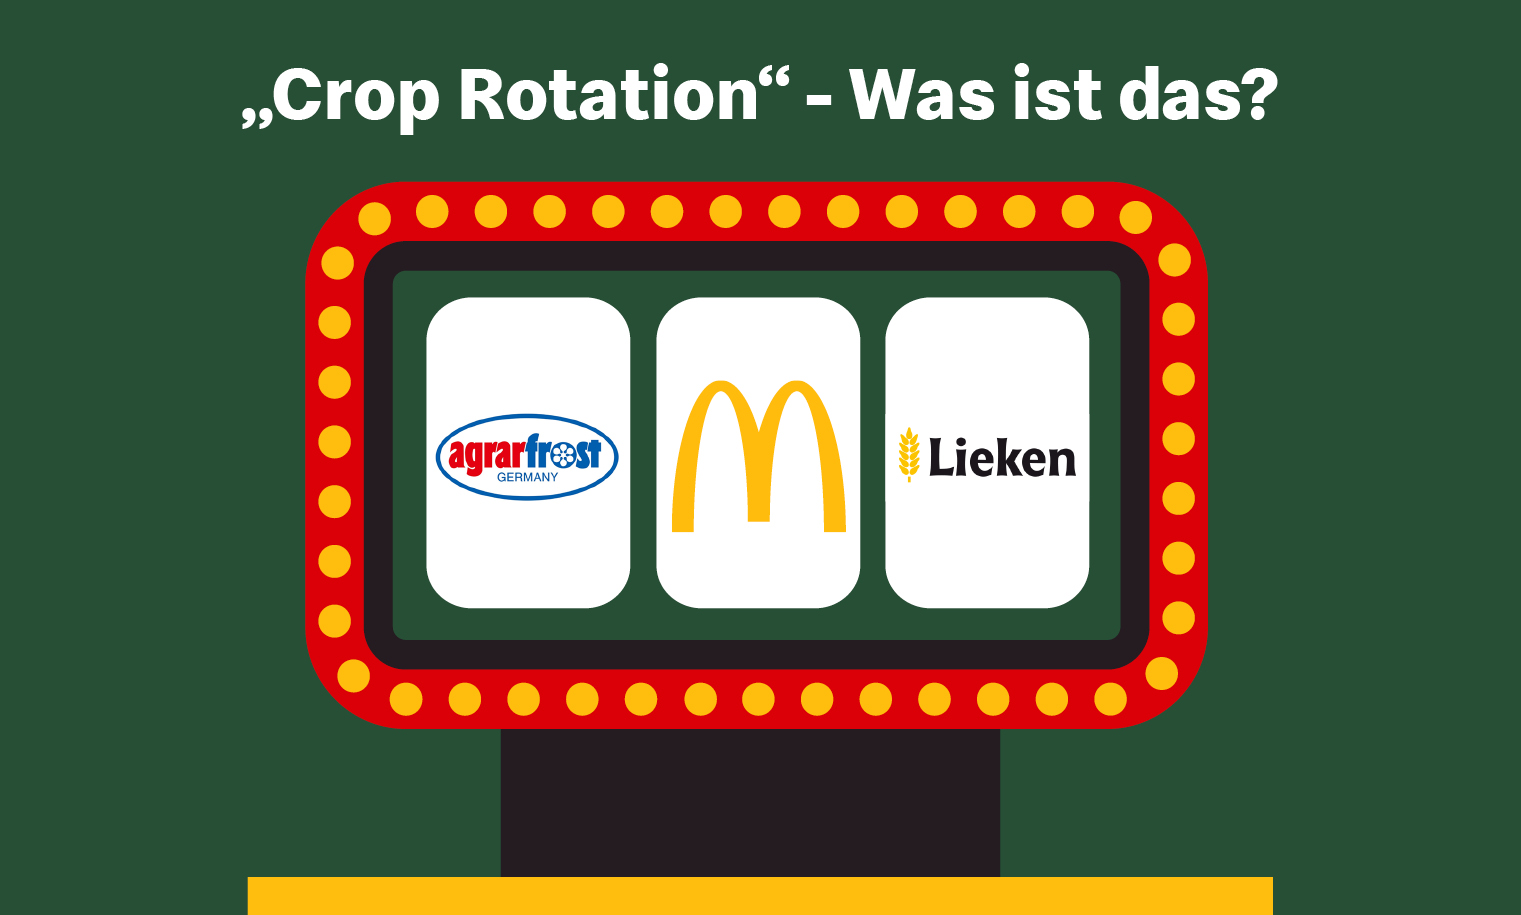 Text: "Crop Rotation" - Was ist das?